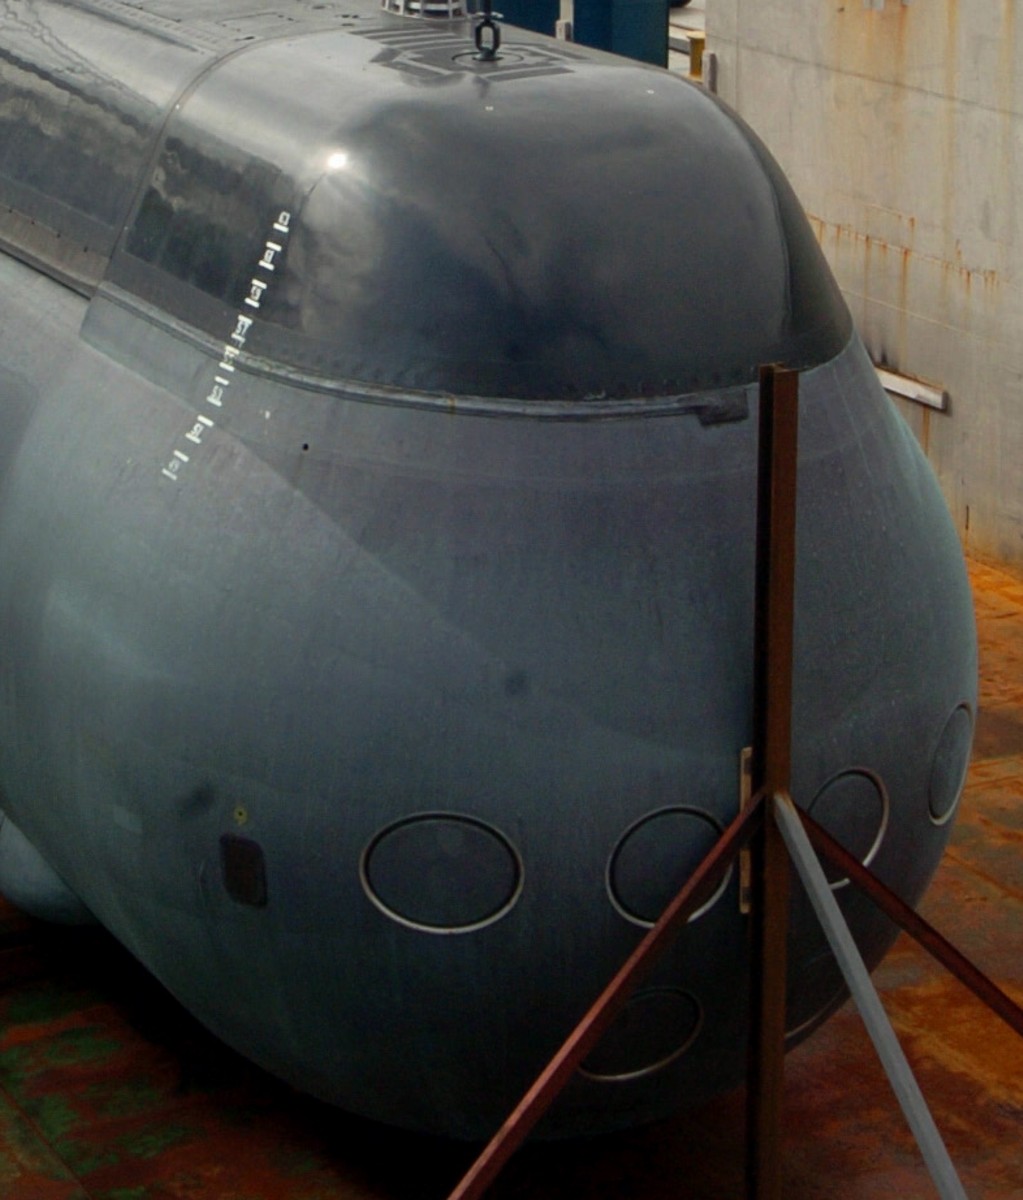 hswms hms gotland gtd class submarine ssk swedish navy svenska marinen försvarsmakten kockums torpedo tubes 20a